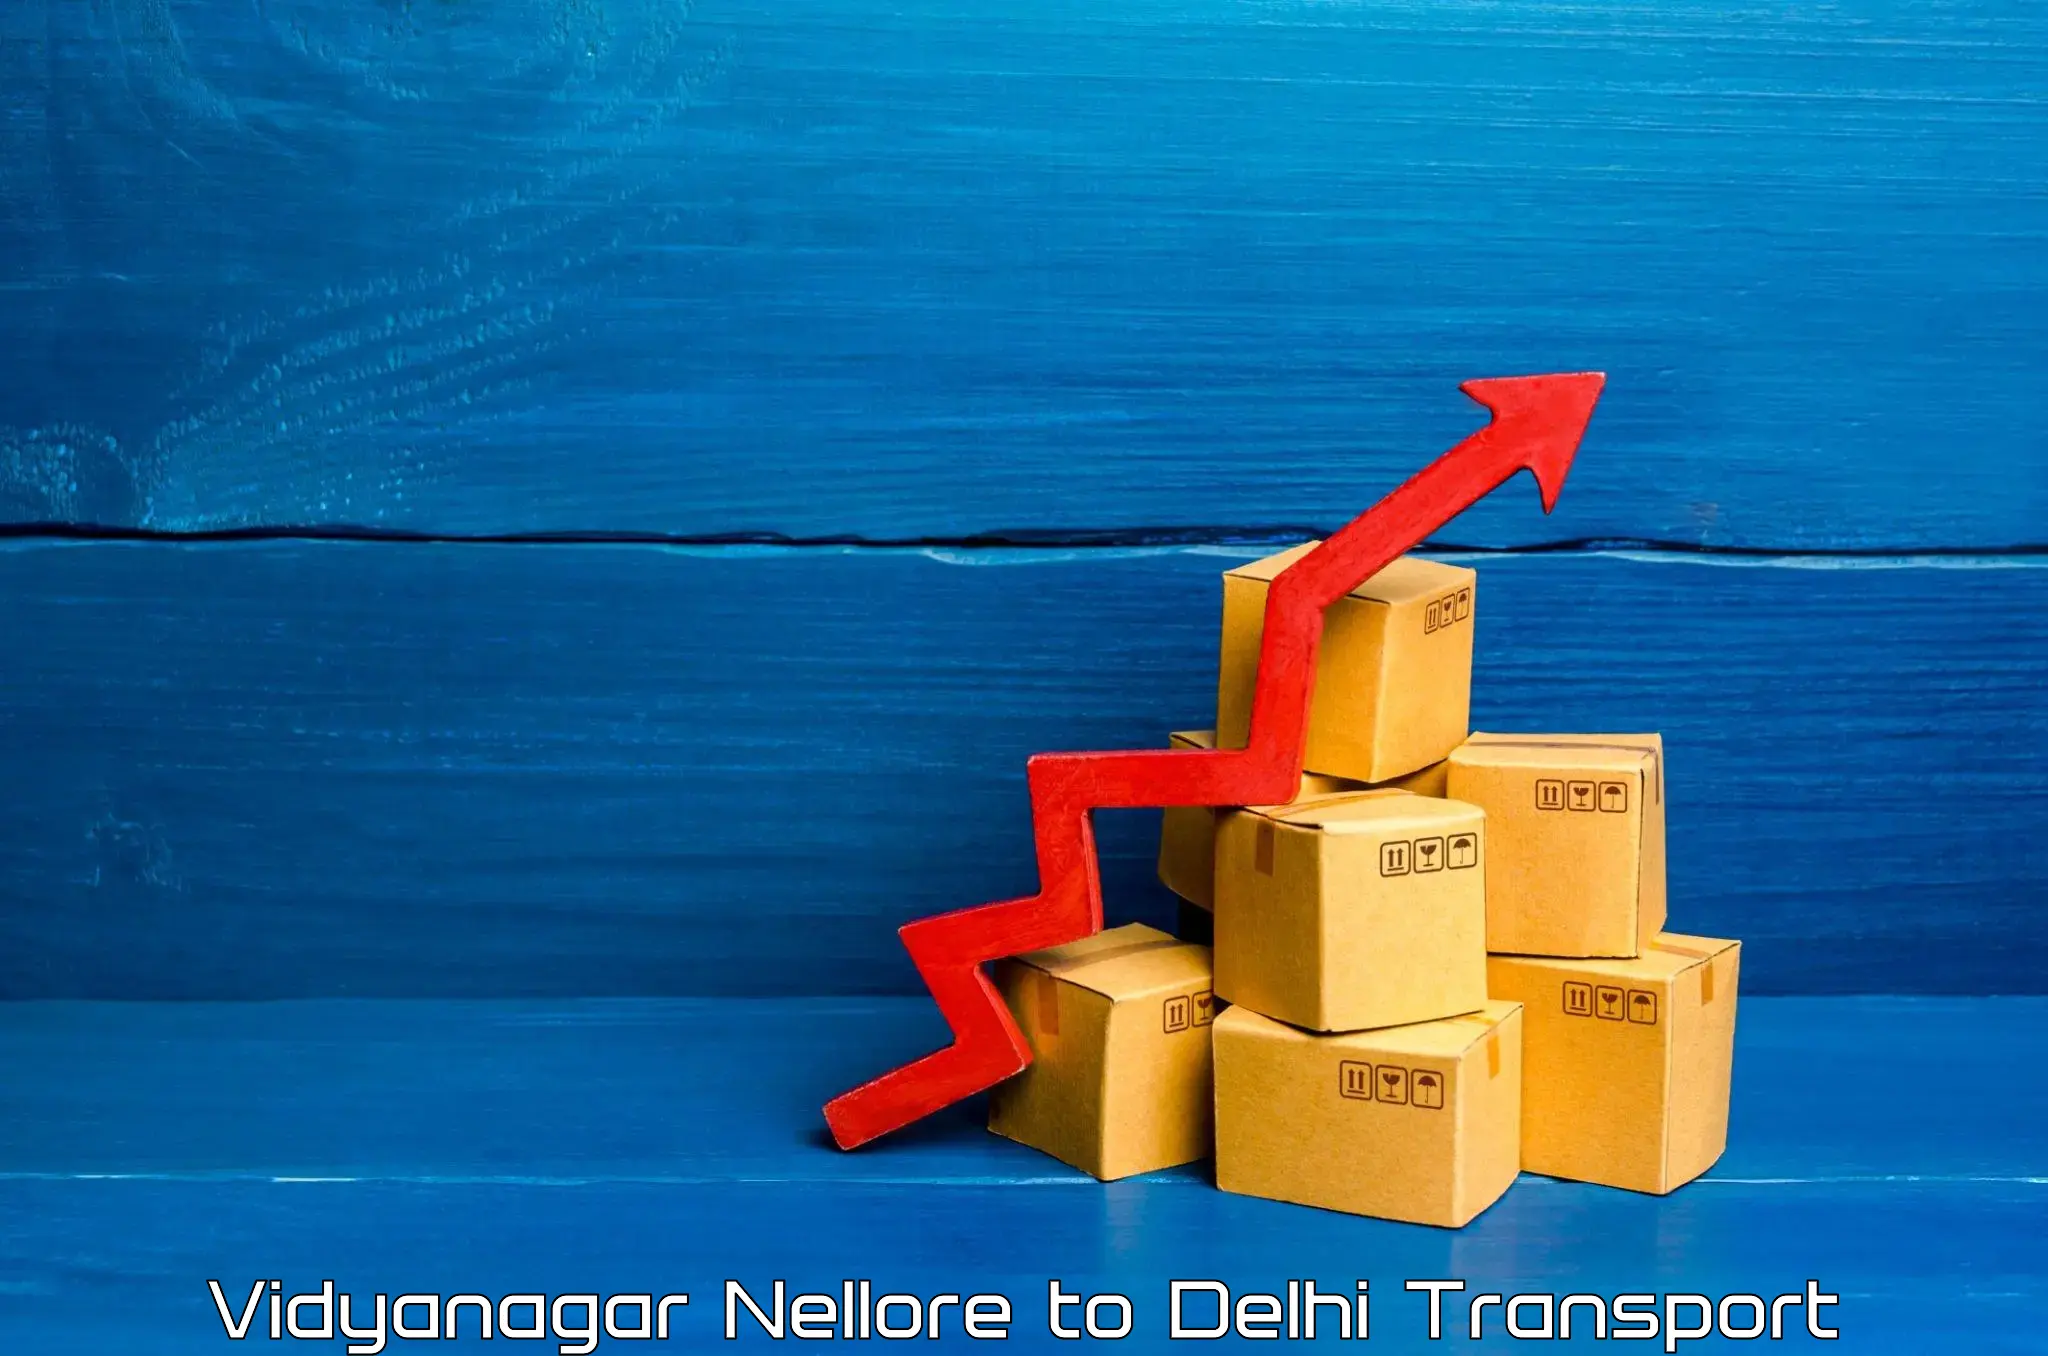 Delivery service in Vidyanagar Nellore to NIT Delhi